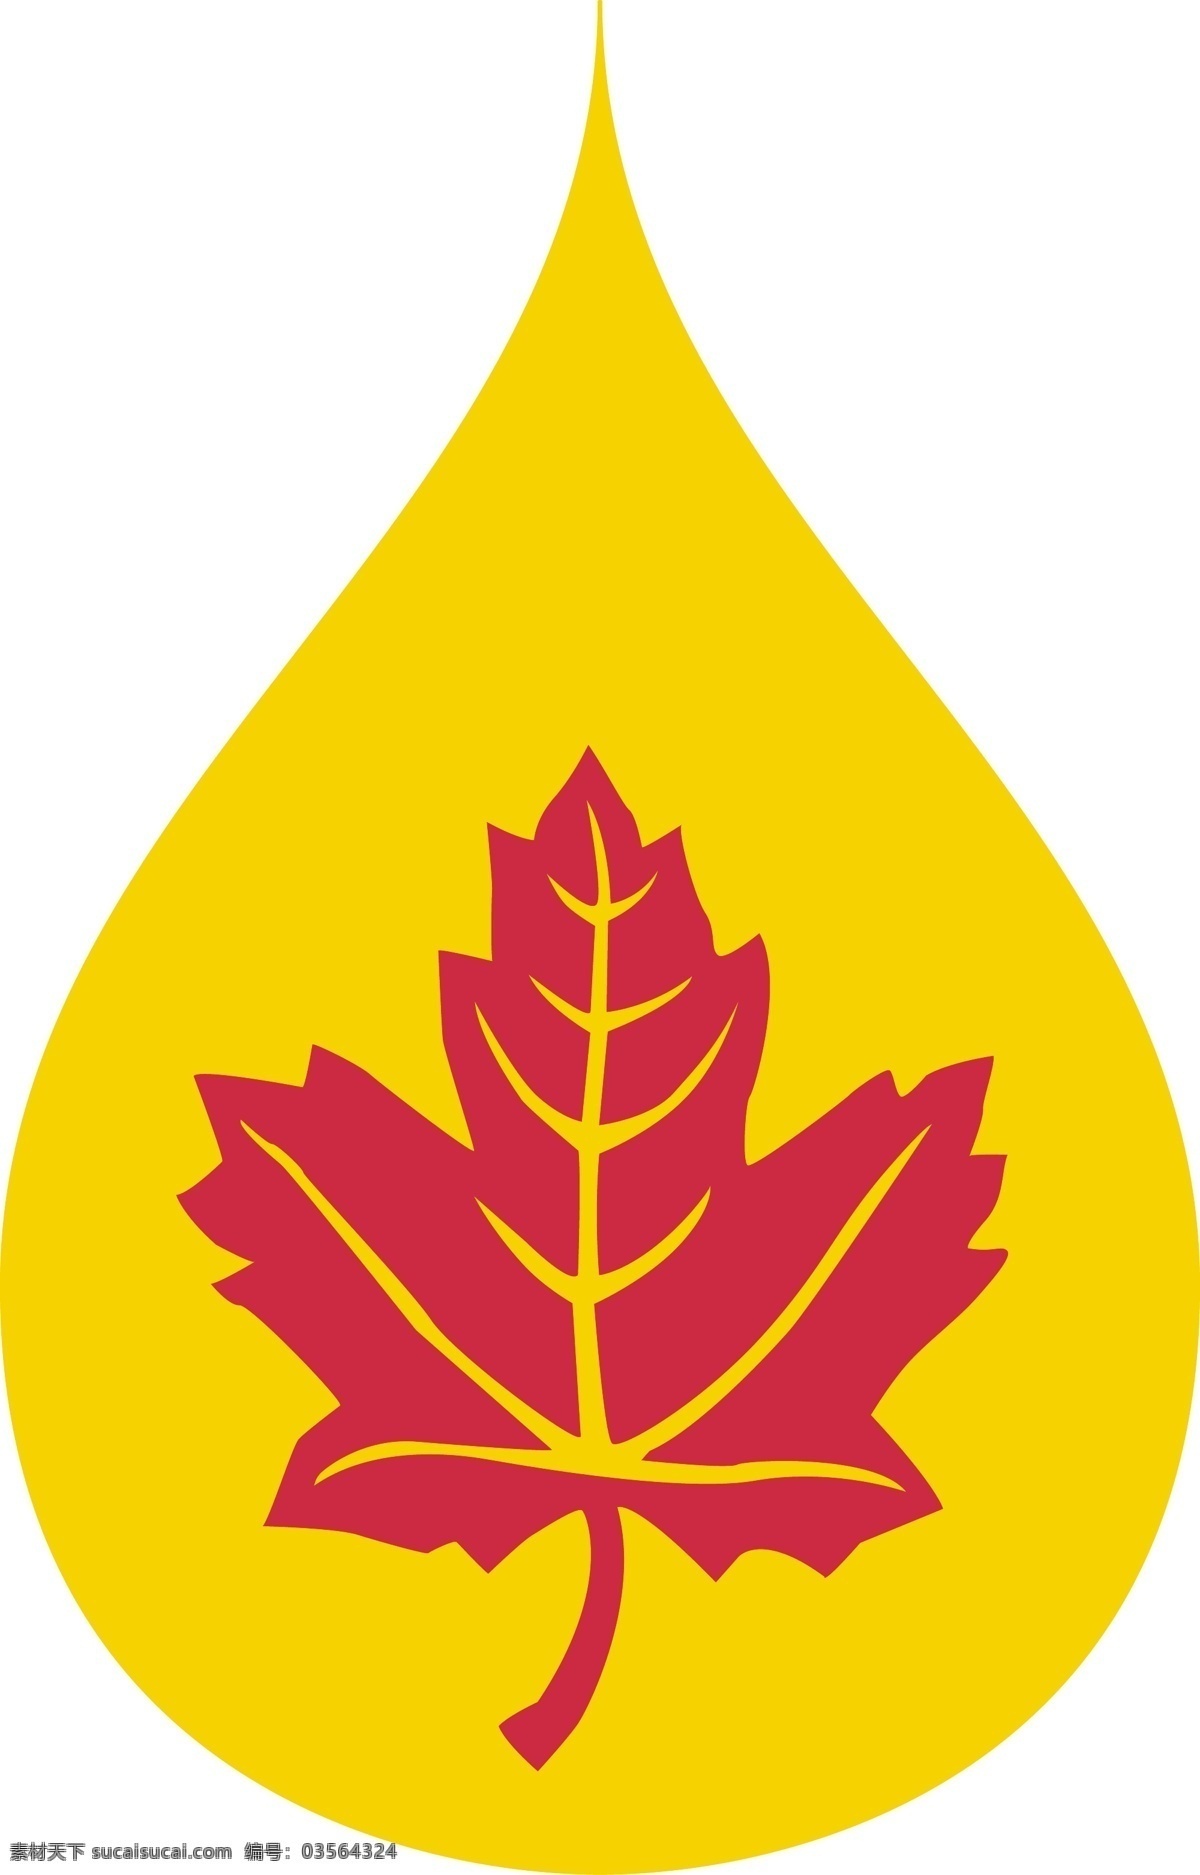 加拿大 高科技 润滑油 免费 润滑剂 标志 psd源文件 logo设计